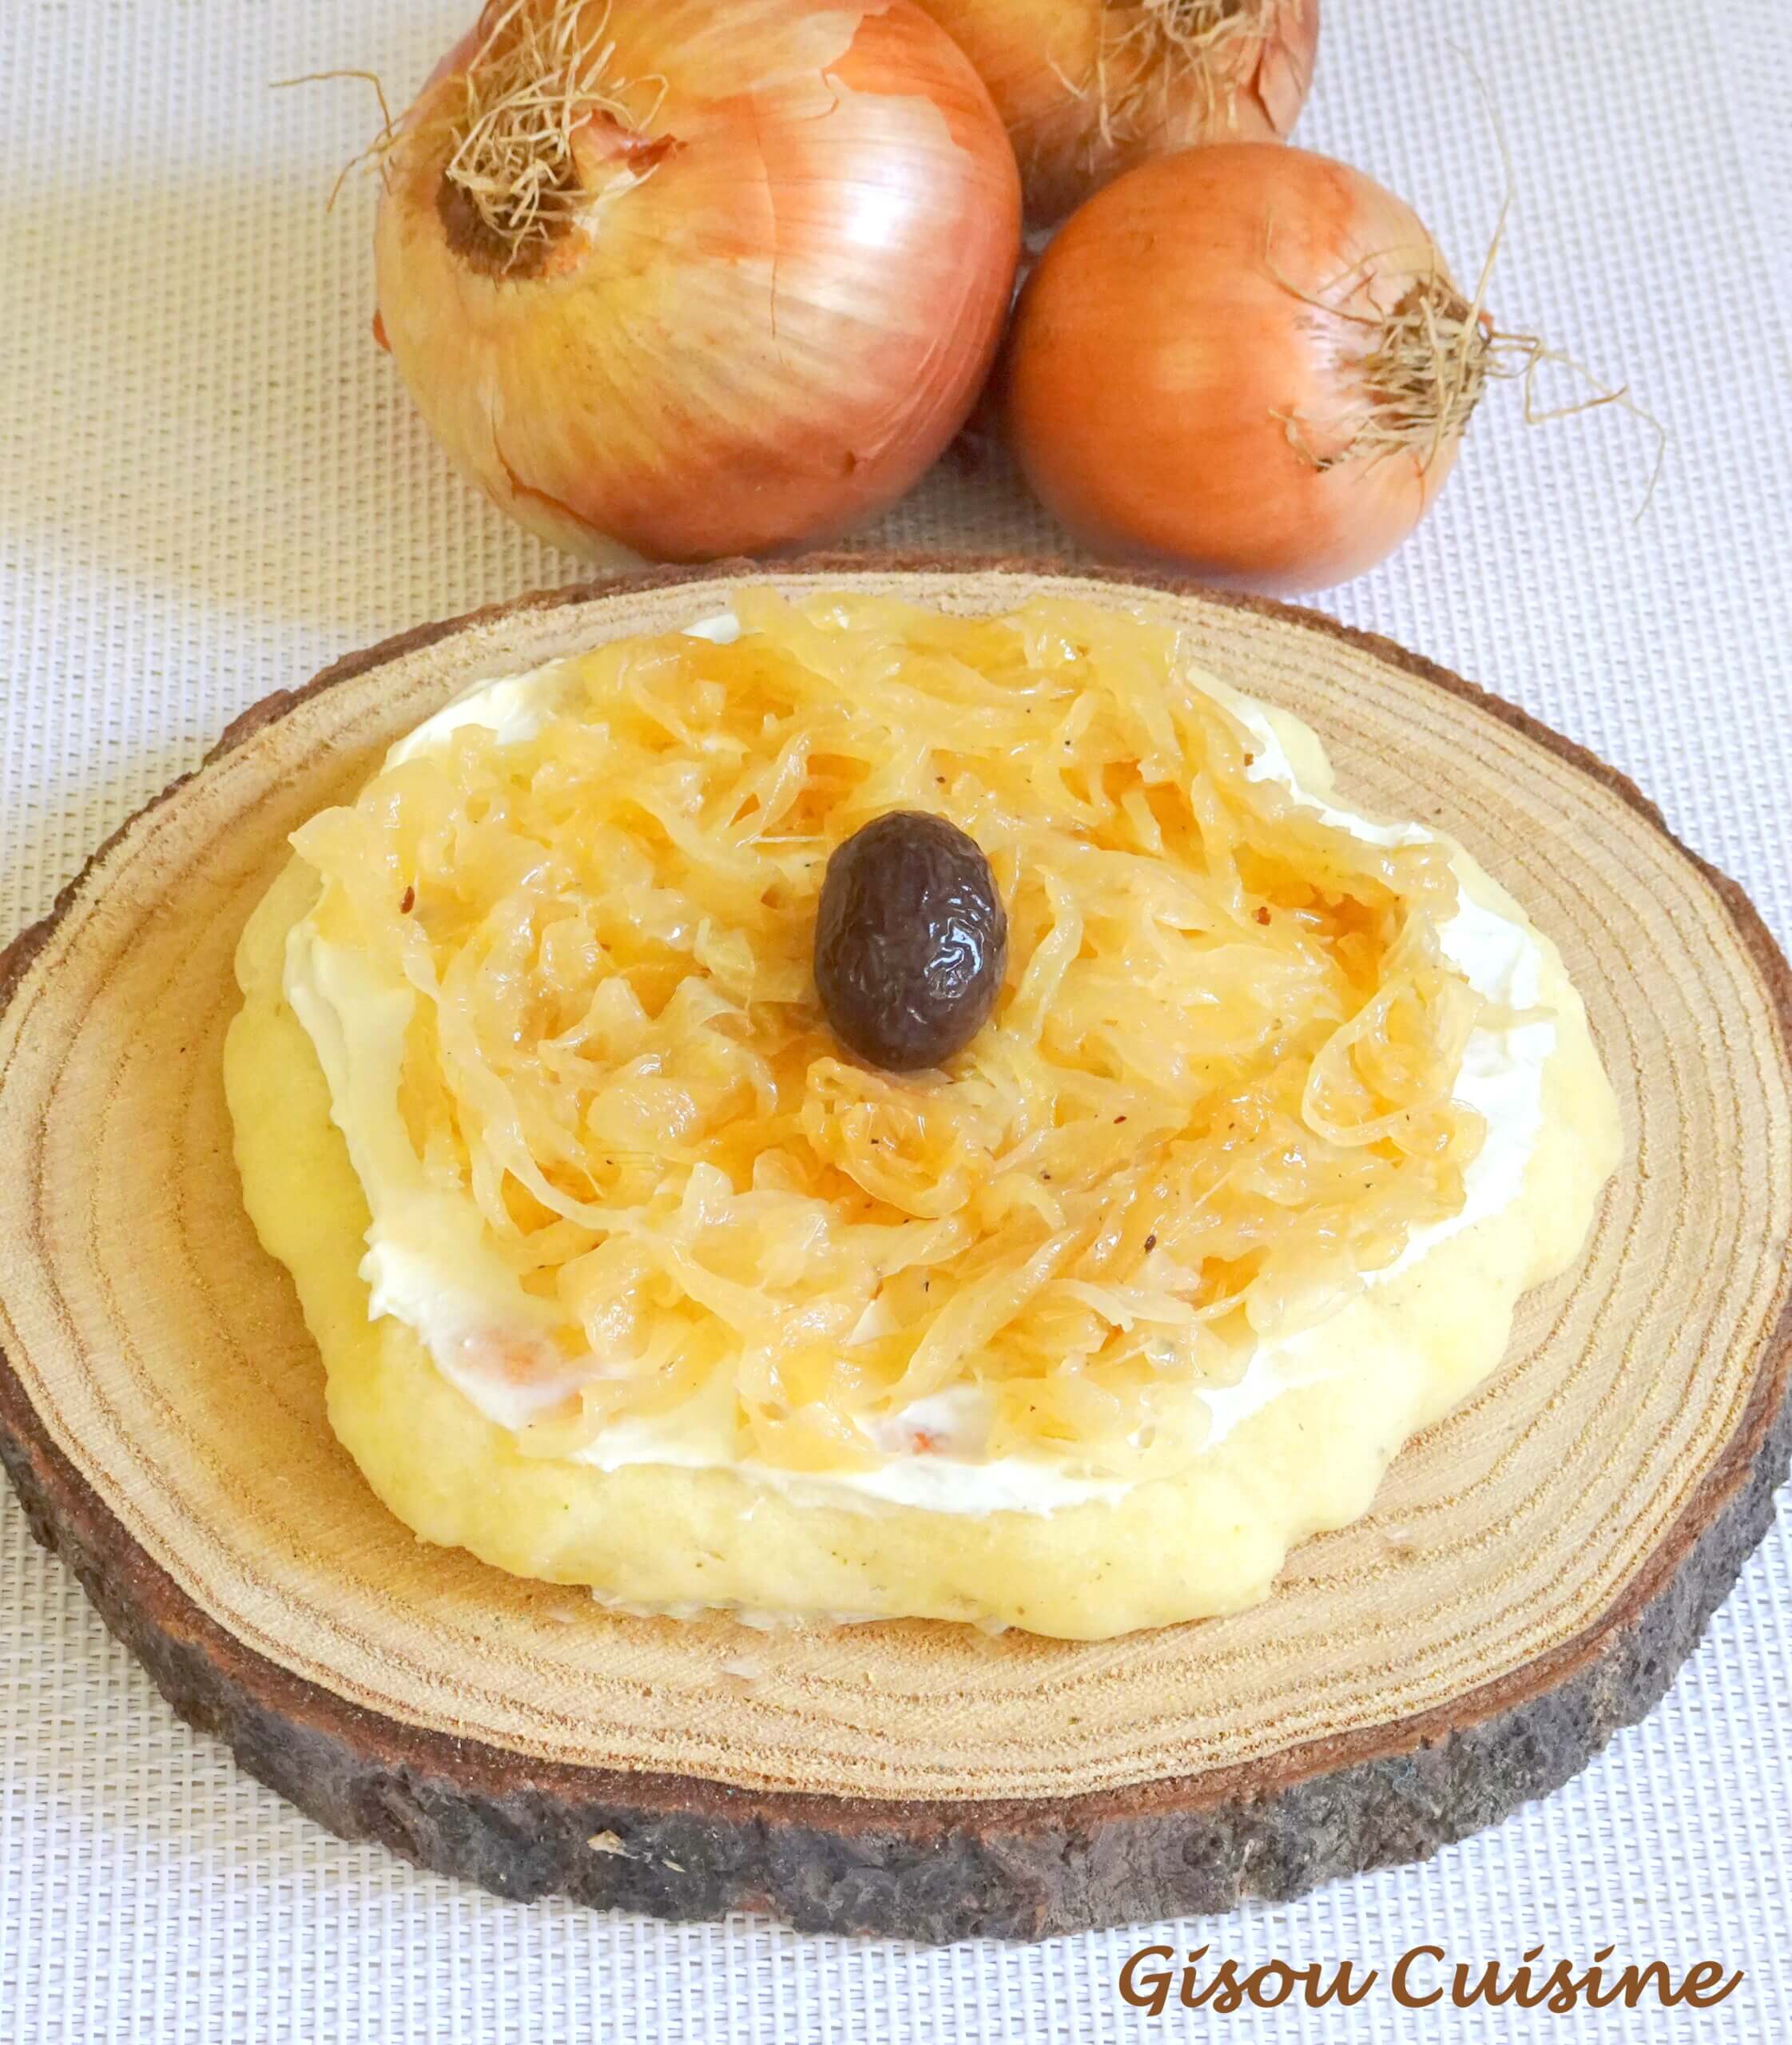 pain au yaourt et confit oignon coupé posé sur un rondin en bois. En arrière plan 3 oignons jaunes.